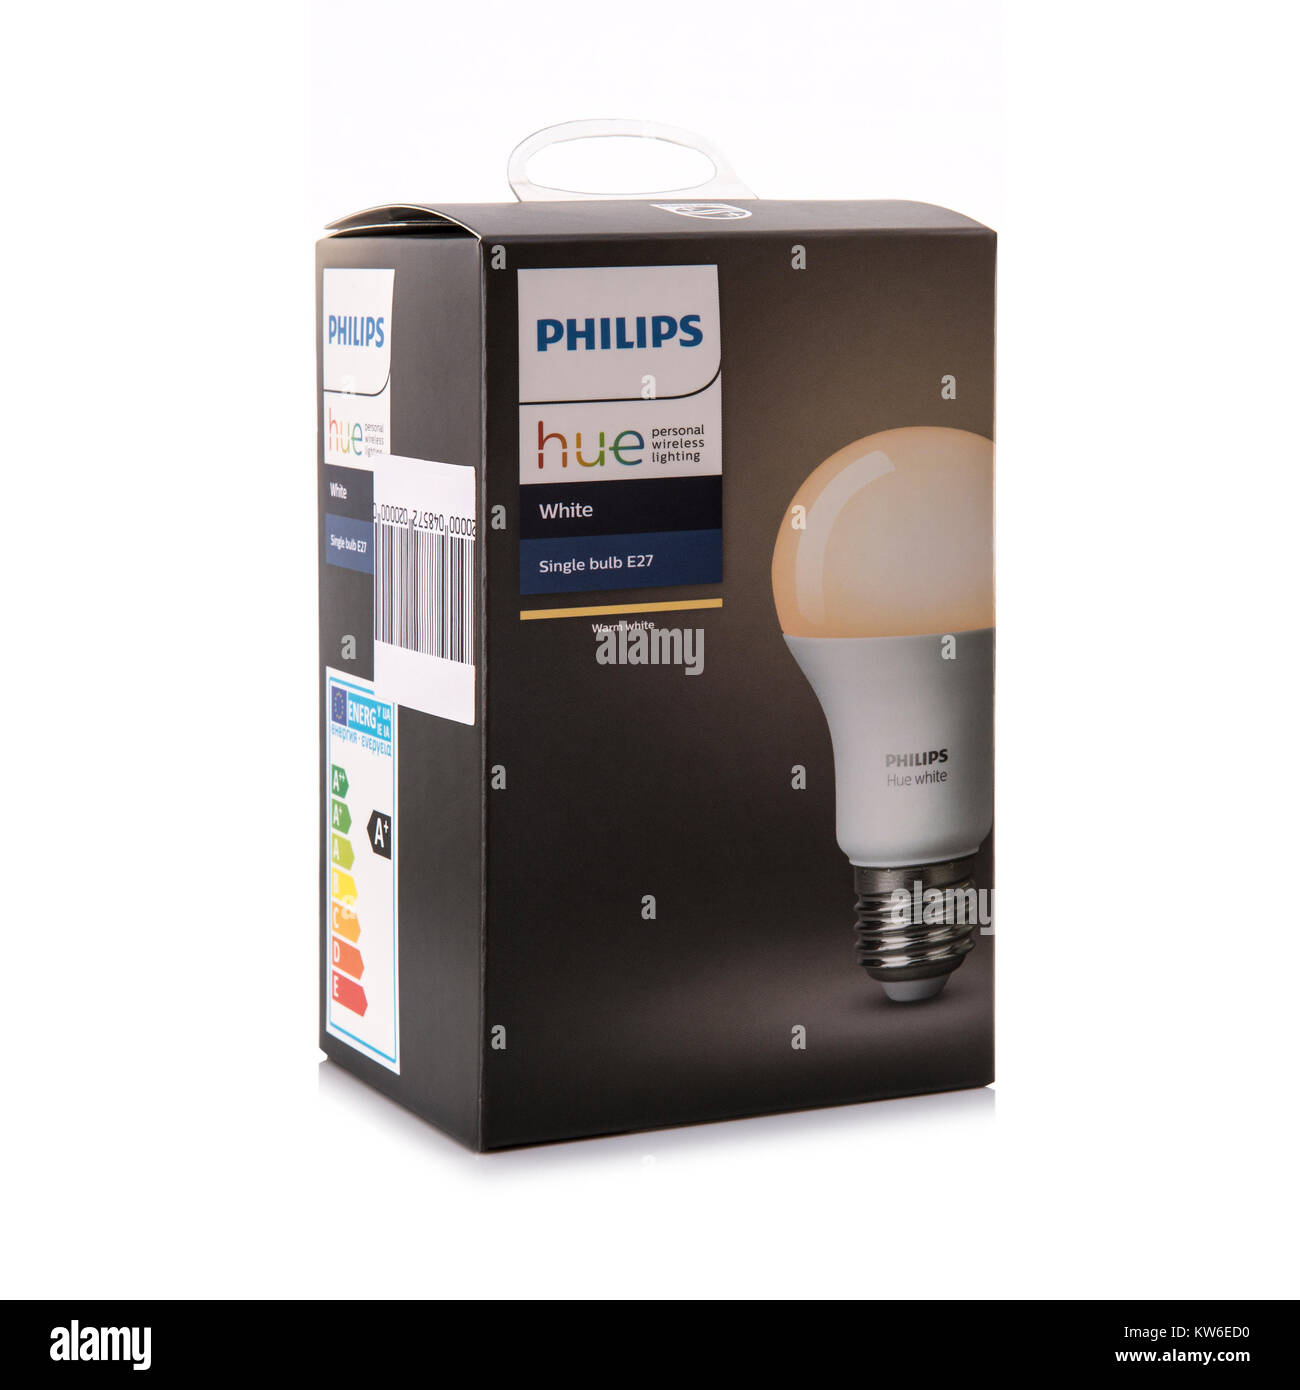 SWINDON, Regno Unito - 30 dicembre 2017: Philips tonalità bianco E27 Smart lampadina, personale illuminazione wirless. Foto Stock